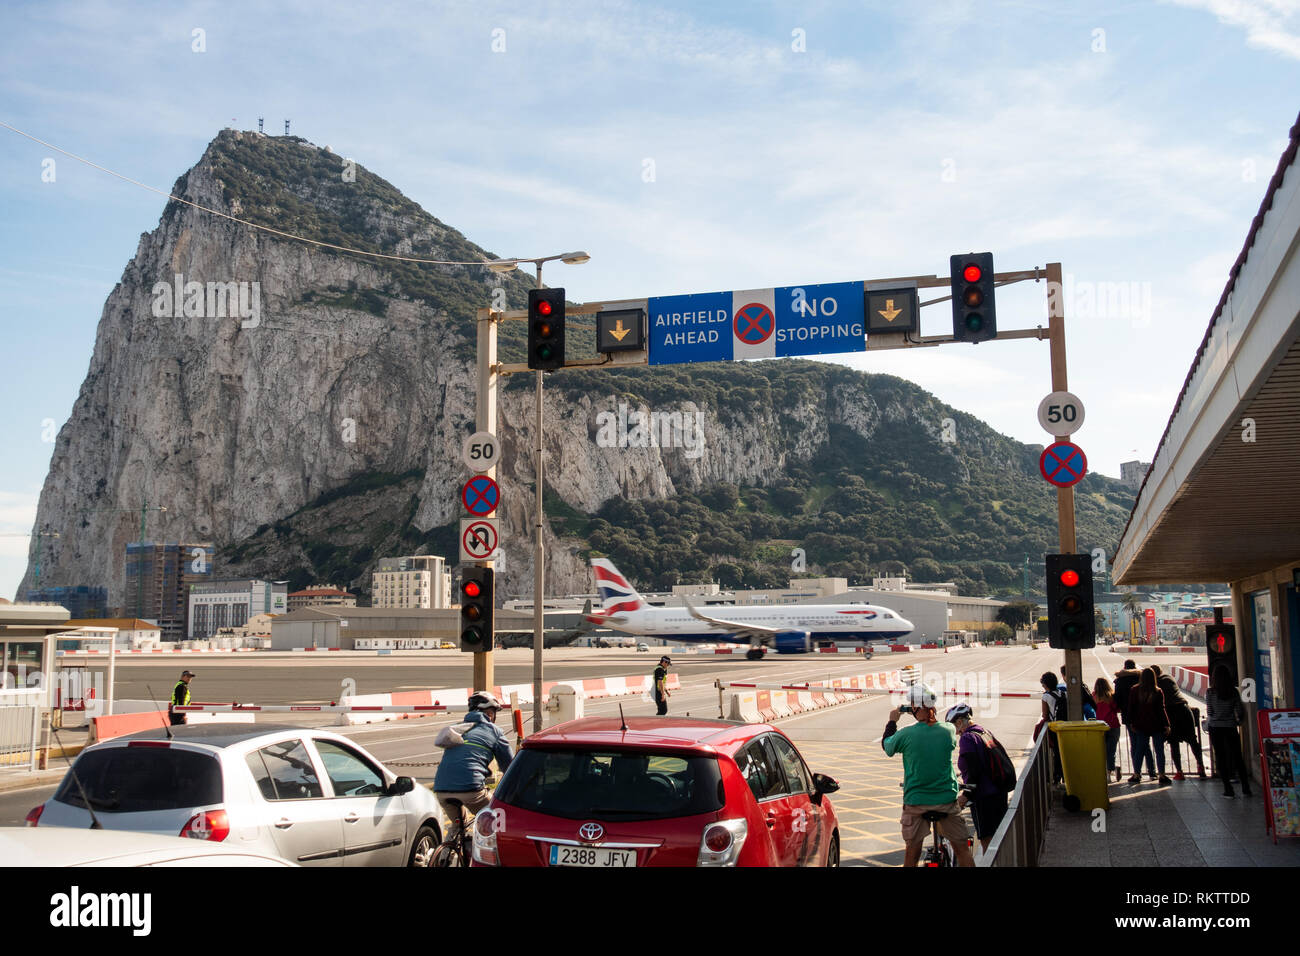 Un Airbus A320 de British Airways s'accélère pour le décollage sur la route alors que le trafic et les piétons, d'attente dans le célèbre passage de l'aéroport à Gibraltar Banque D'Images